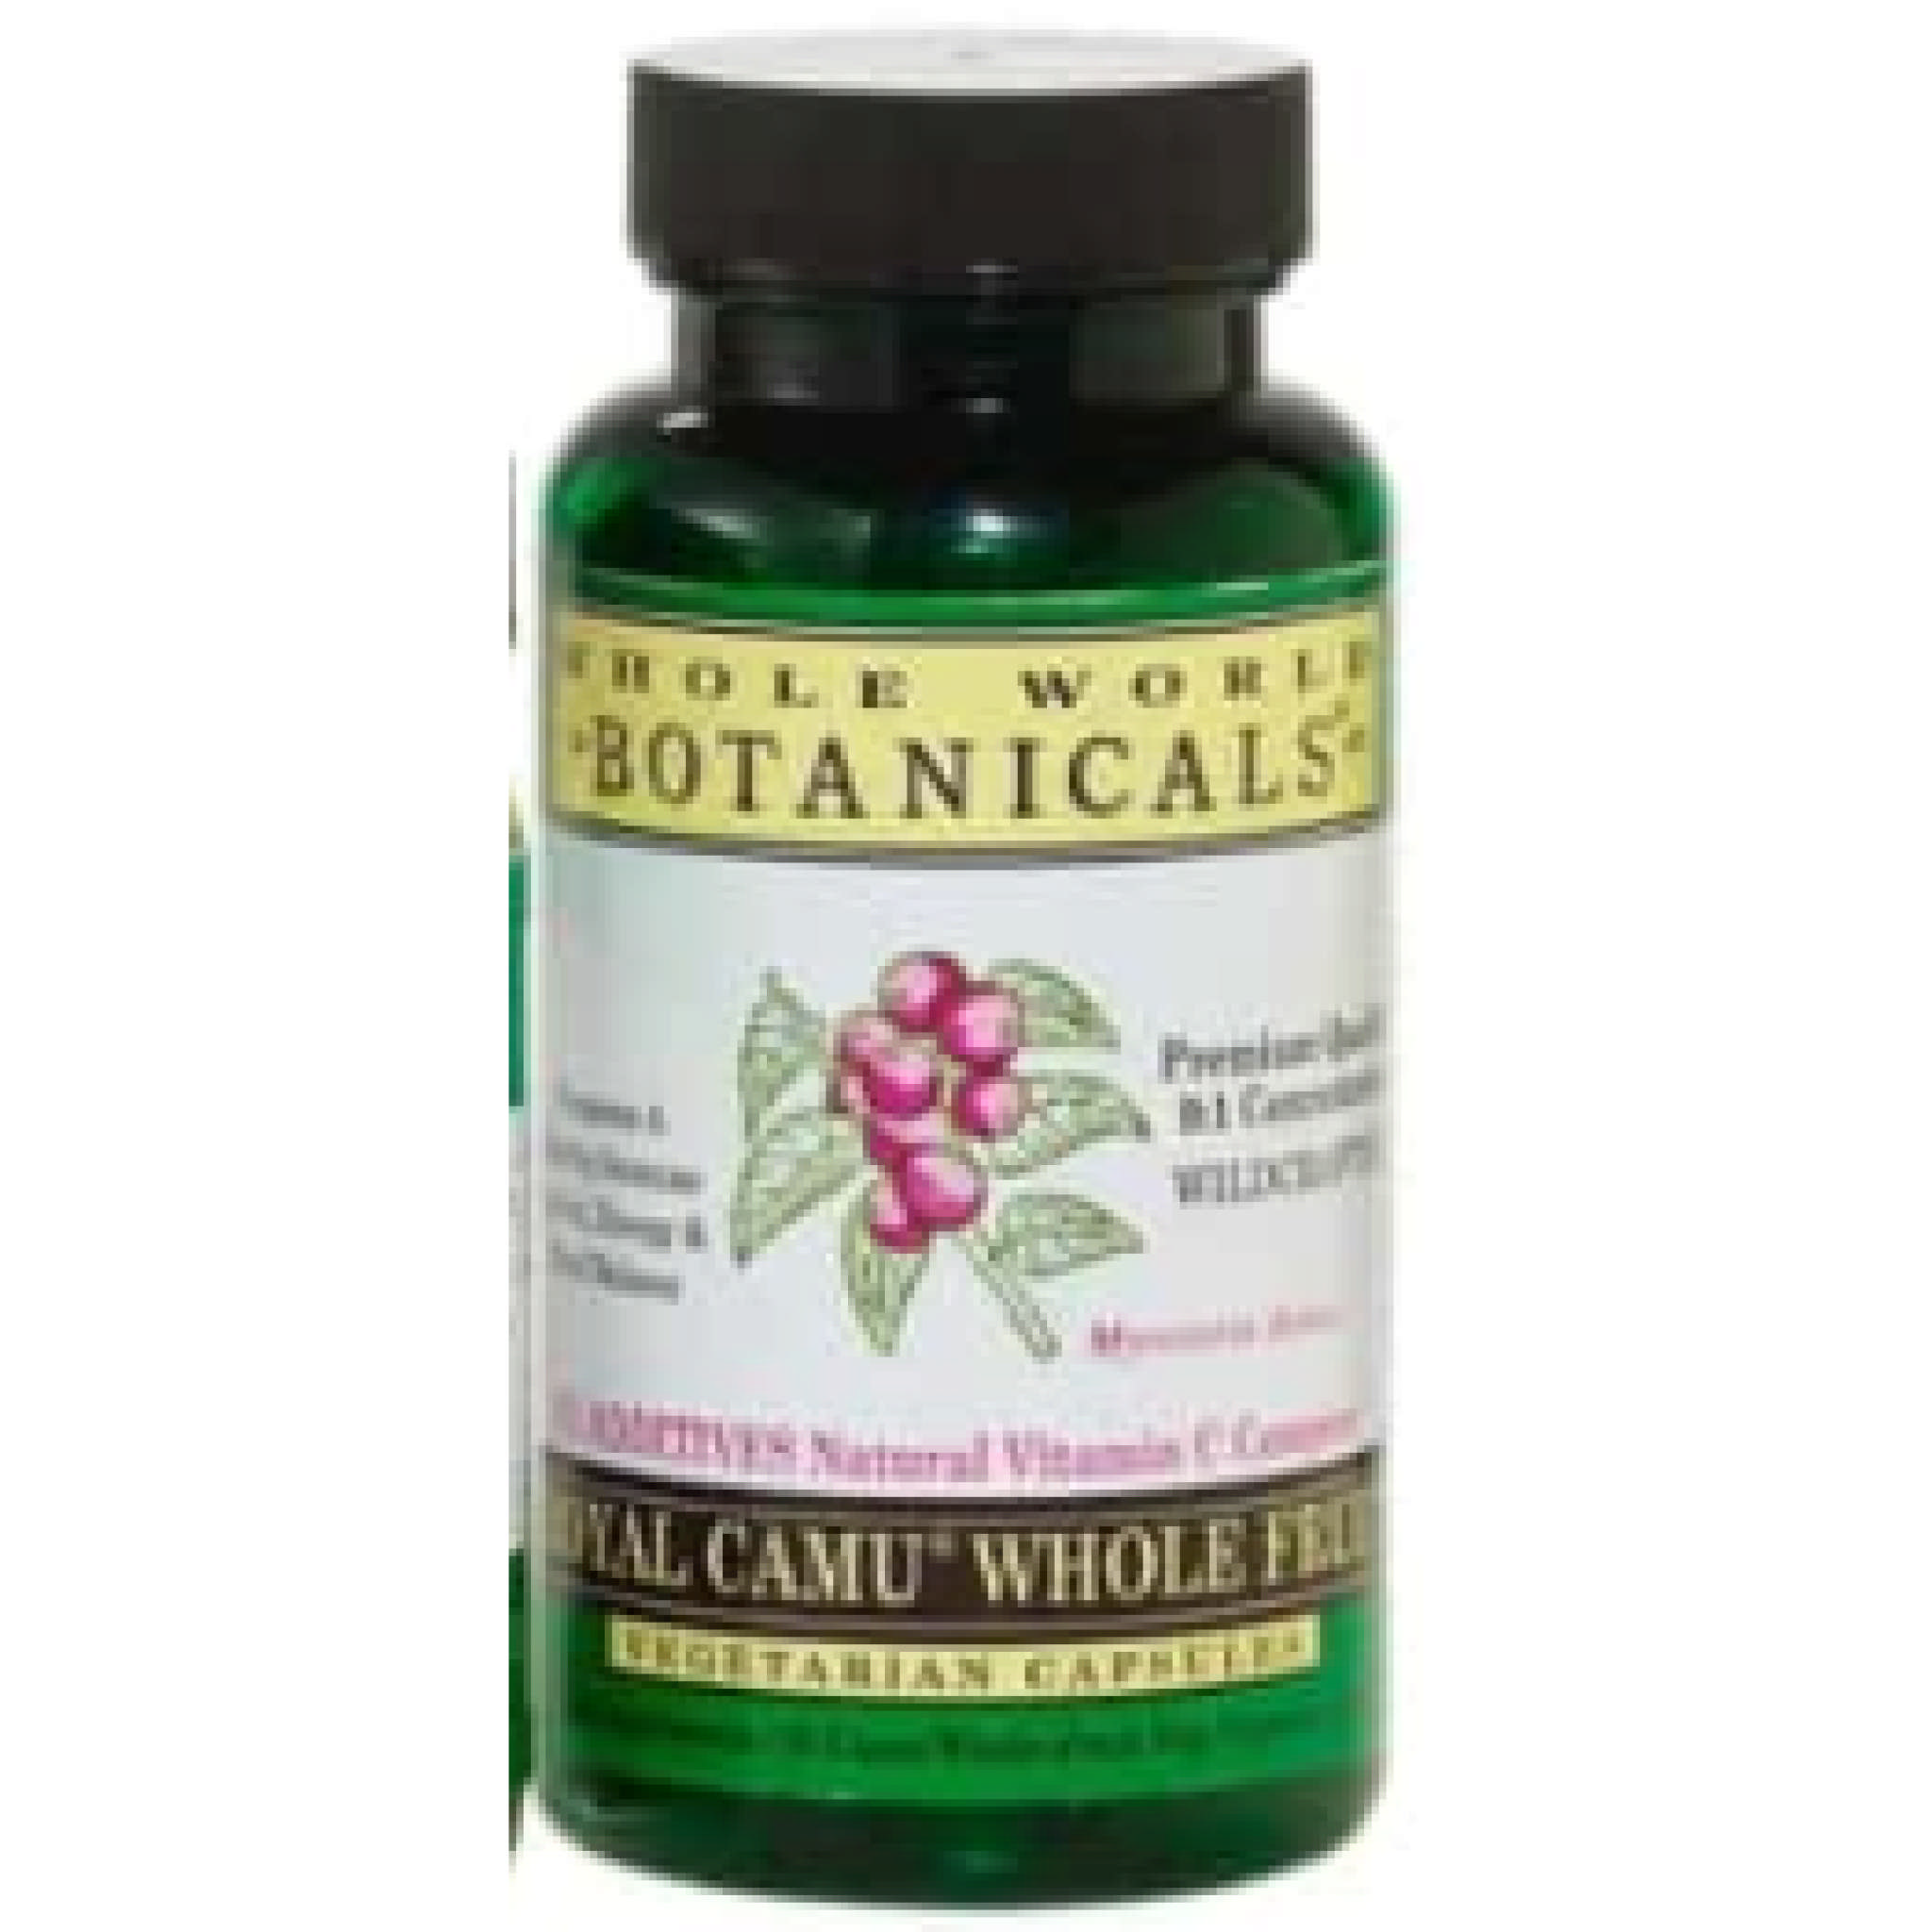 Whole World Botanicals - Royal Camu Whole Fruit vCap